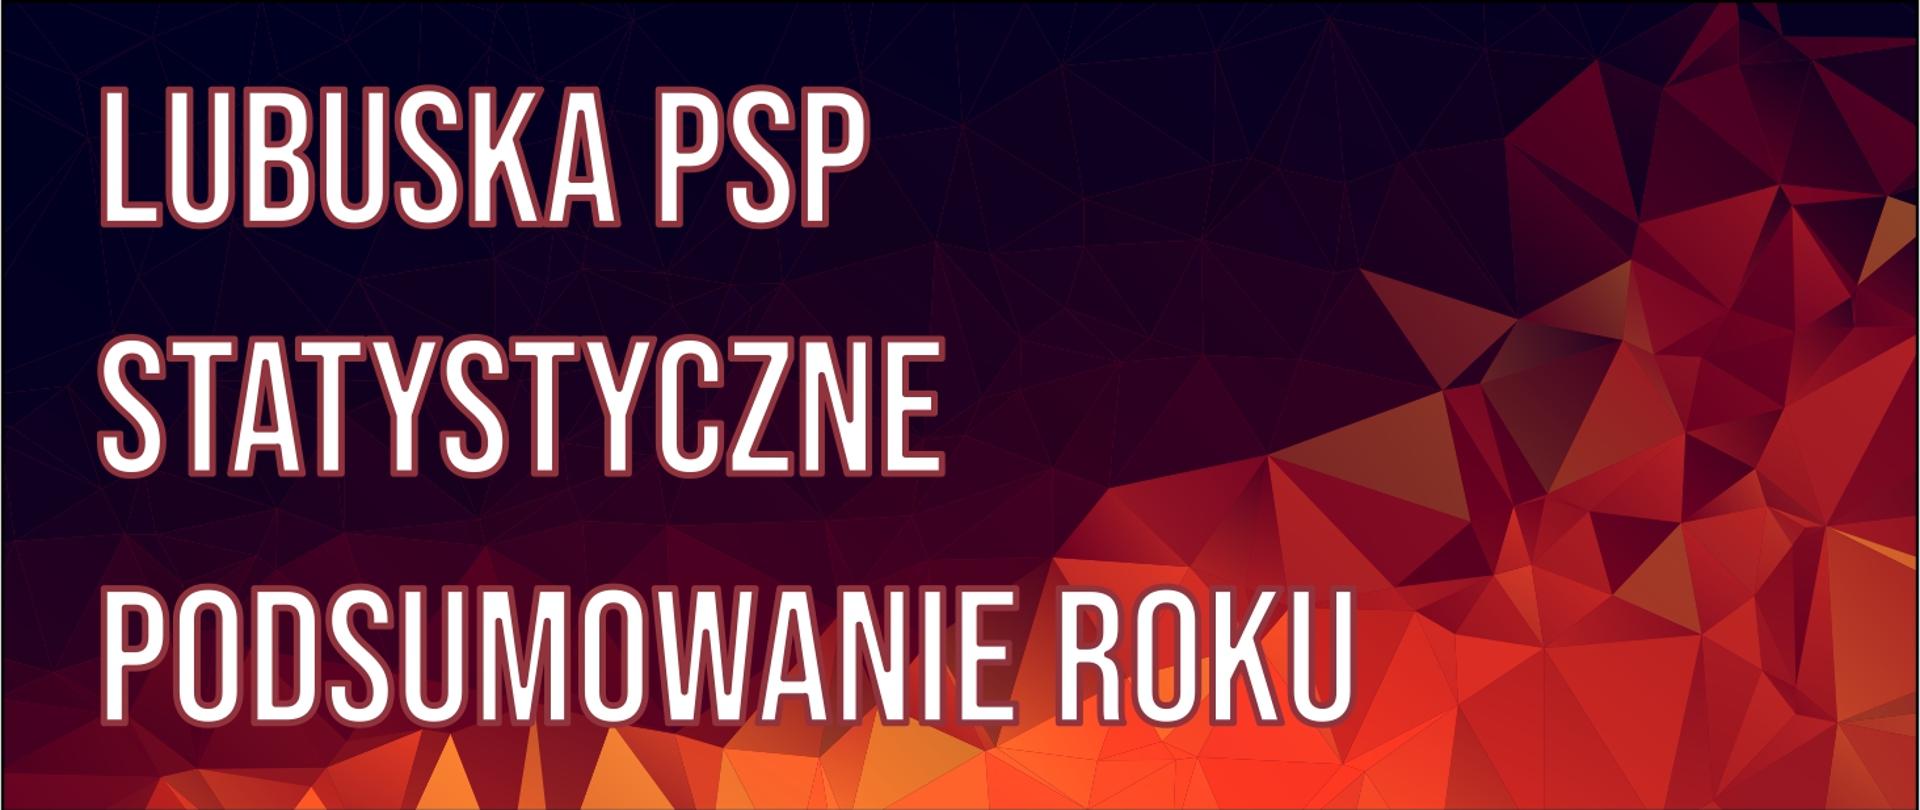 Napis Lubuska PSP Statystyczne Podsumowanie roku na czerwonym tle. 